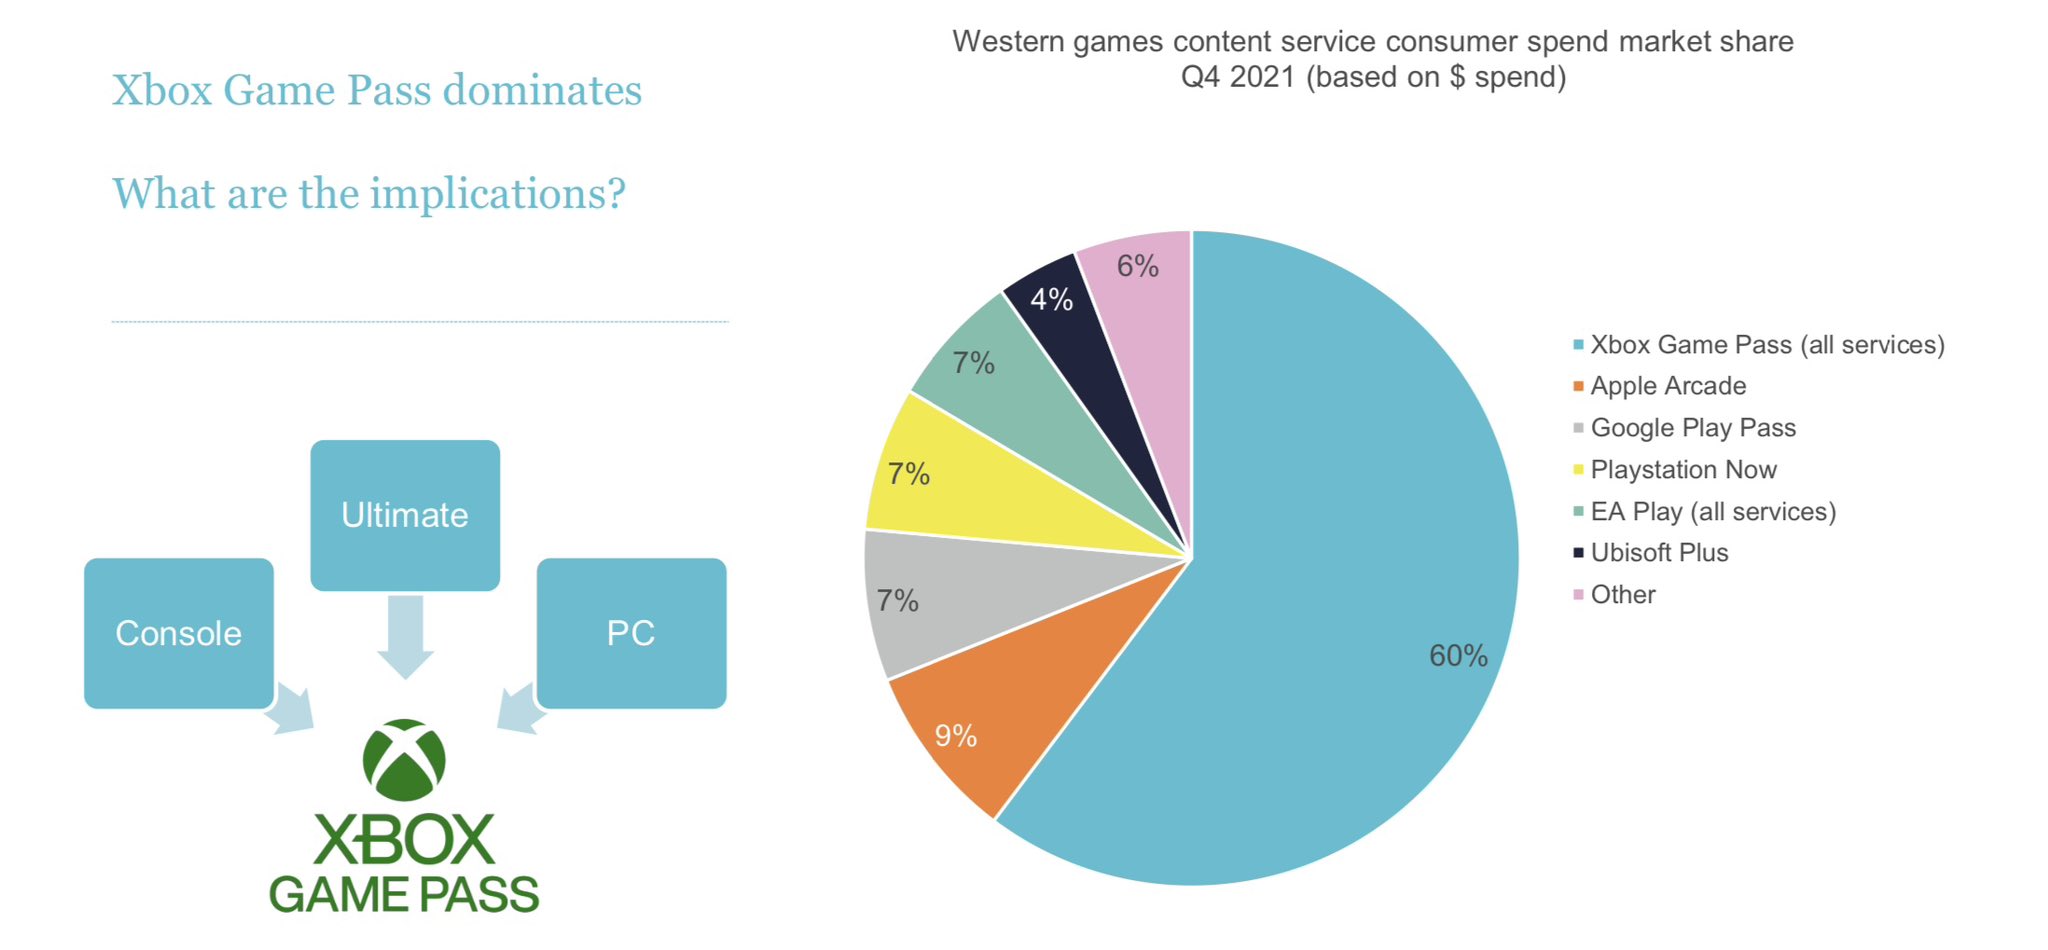 索尼称微软Game Pass订阅数达到了2900万 2%title%